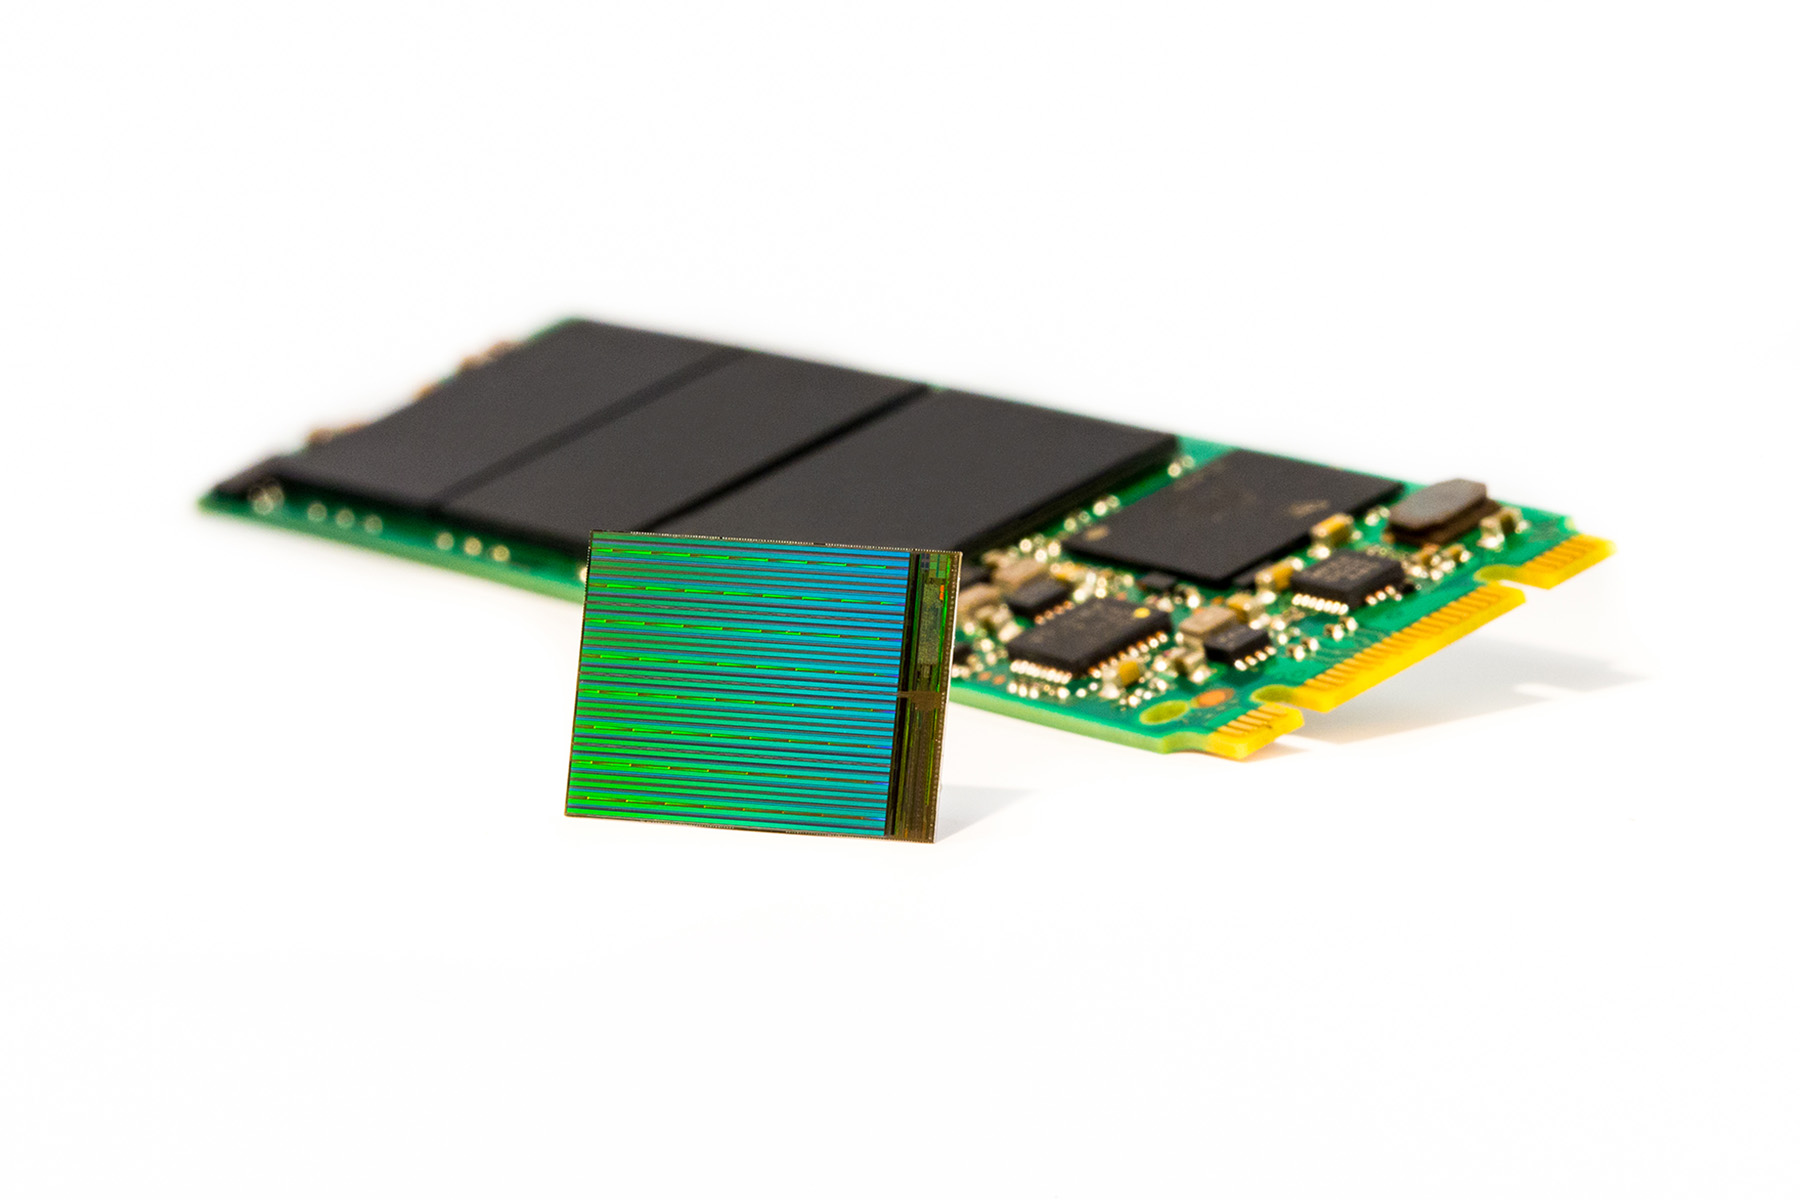 Immagine pubblicata in relazione al seguente contenuto: Intel e Micron promettono SSD meno costosi con i chip 3D NAND | Nome immagine: news22397_Intel-Micron-3D-DIE-M2-SSD_1.jpg